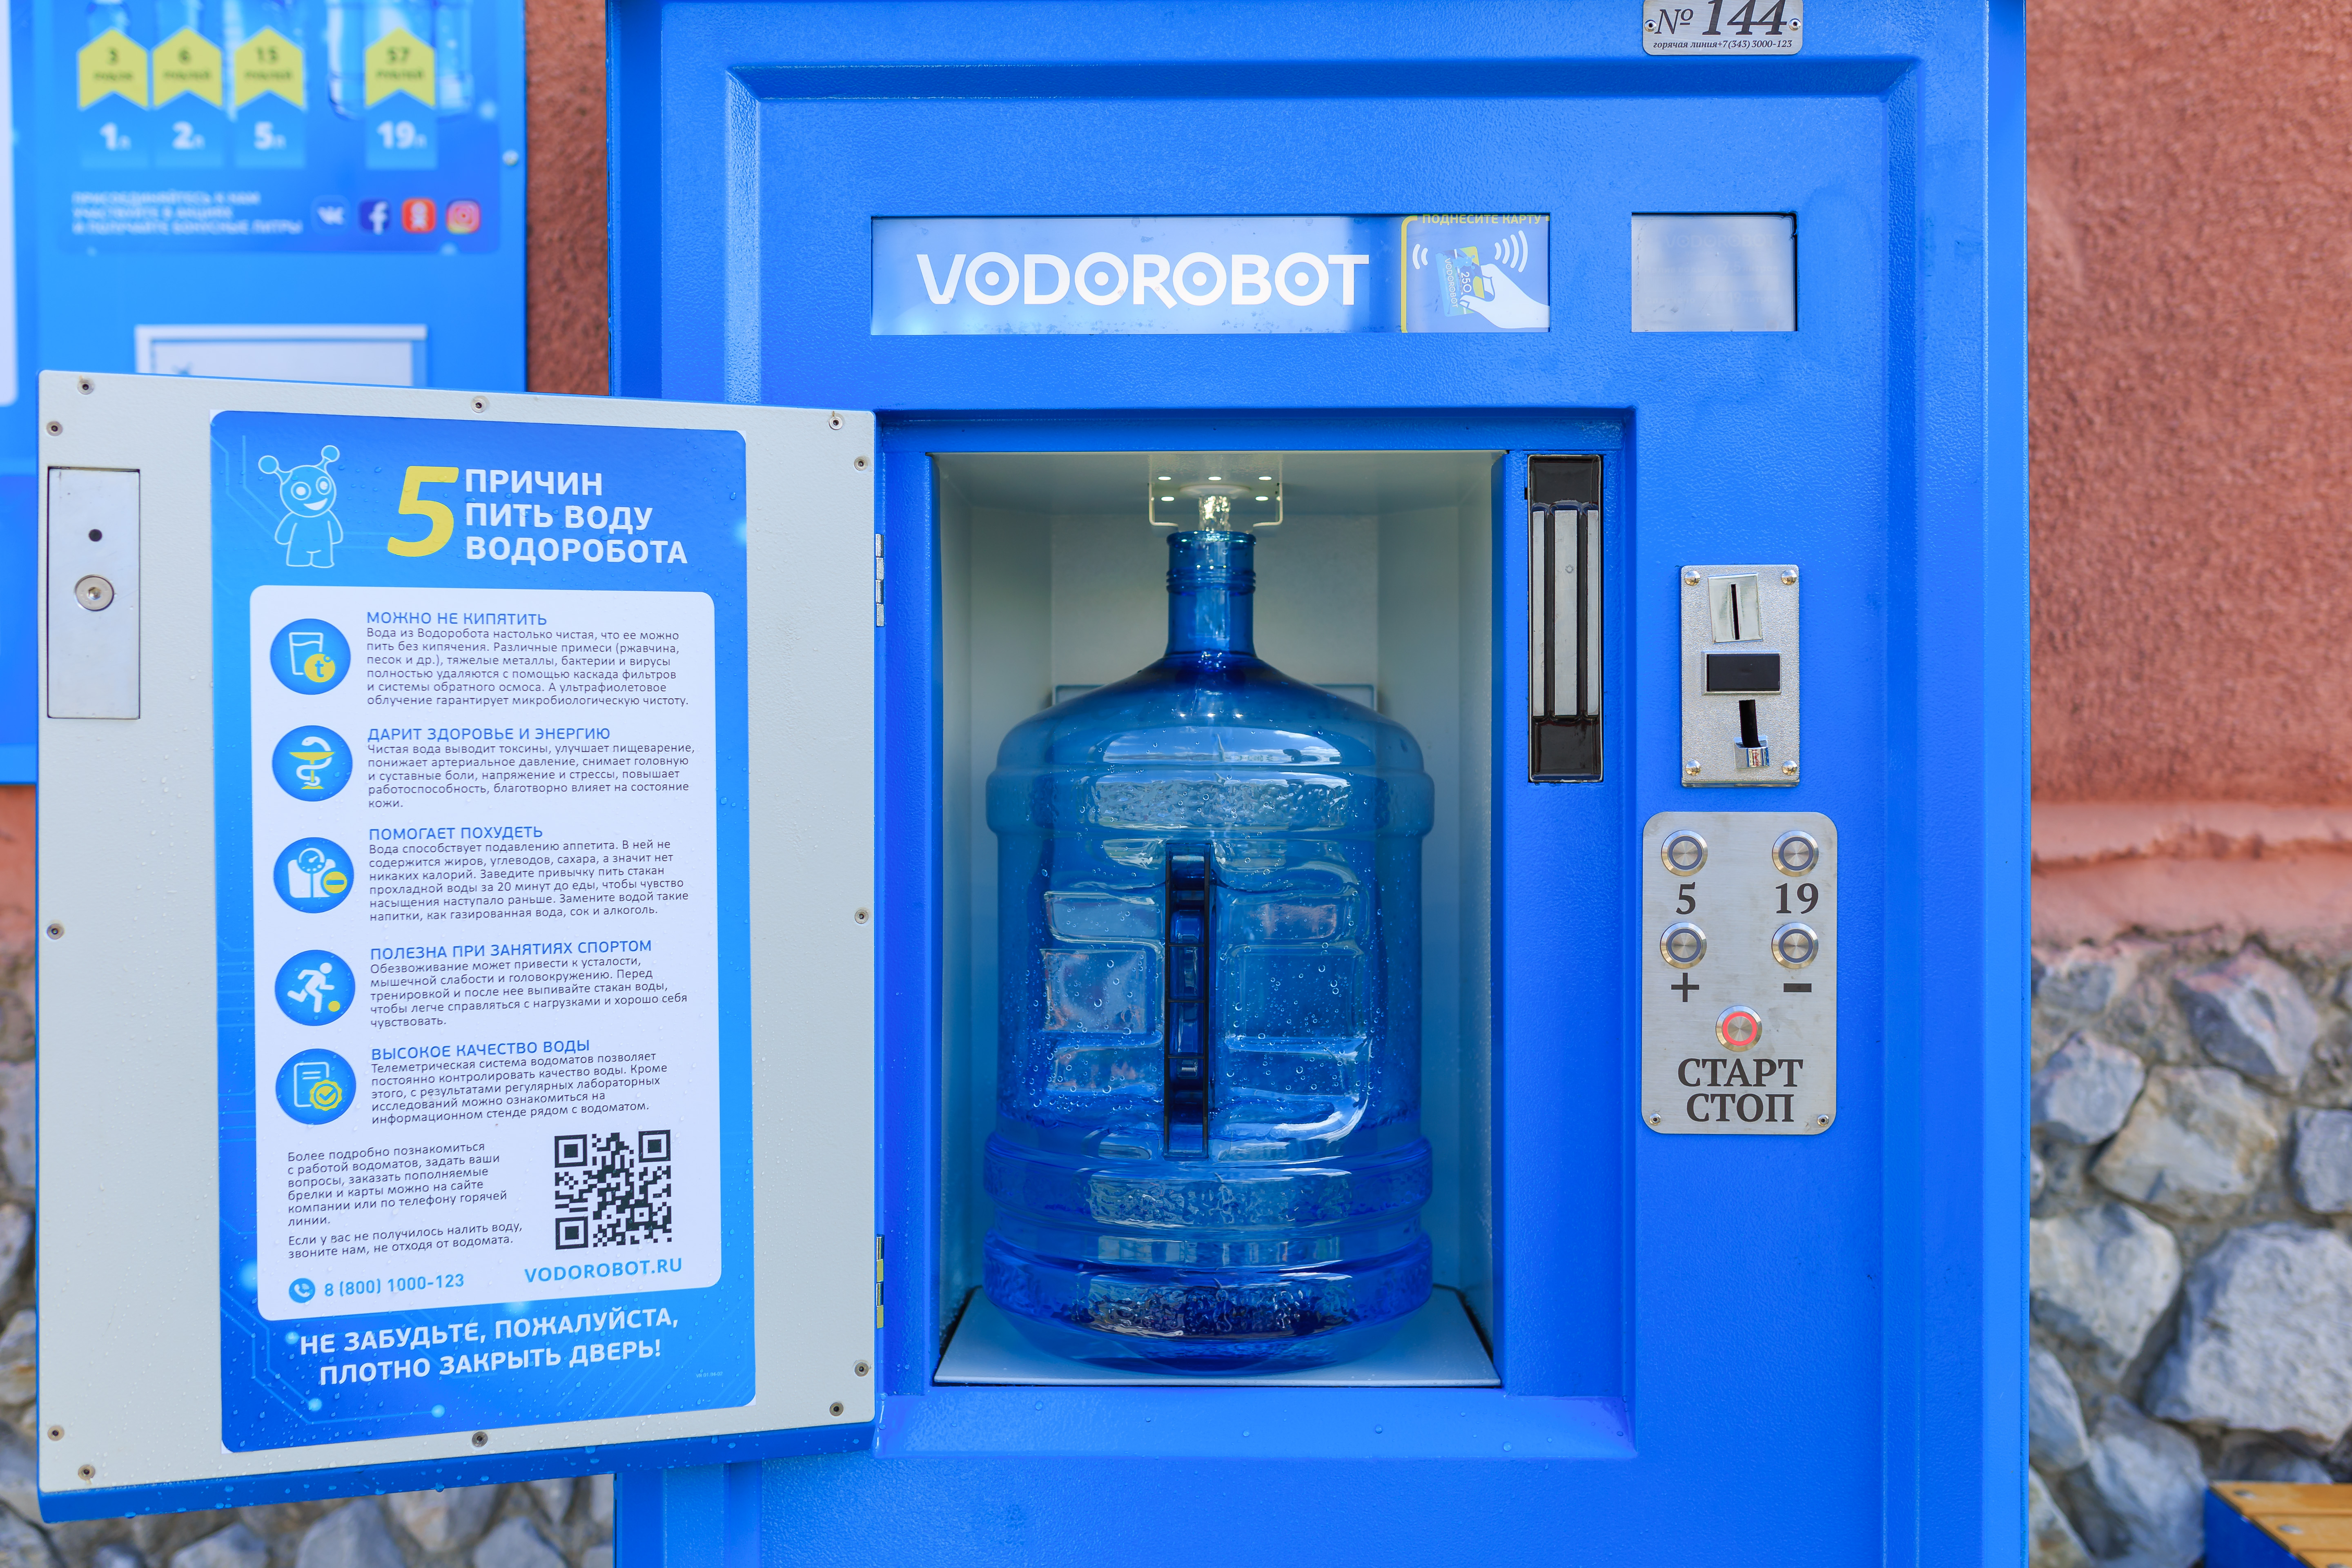 Вода кореновск. Автомат питьевой воды. Автомат с бутилированной водой. Водоробот автомат. Аппарат для питьевой воды на улице.